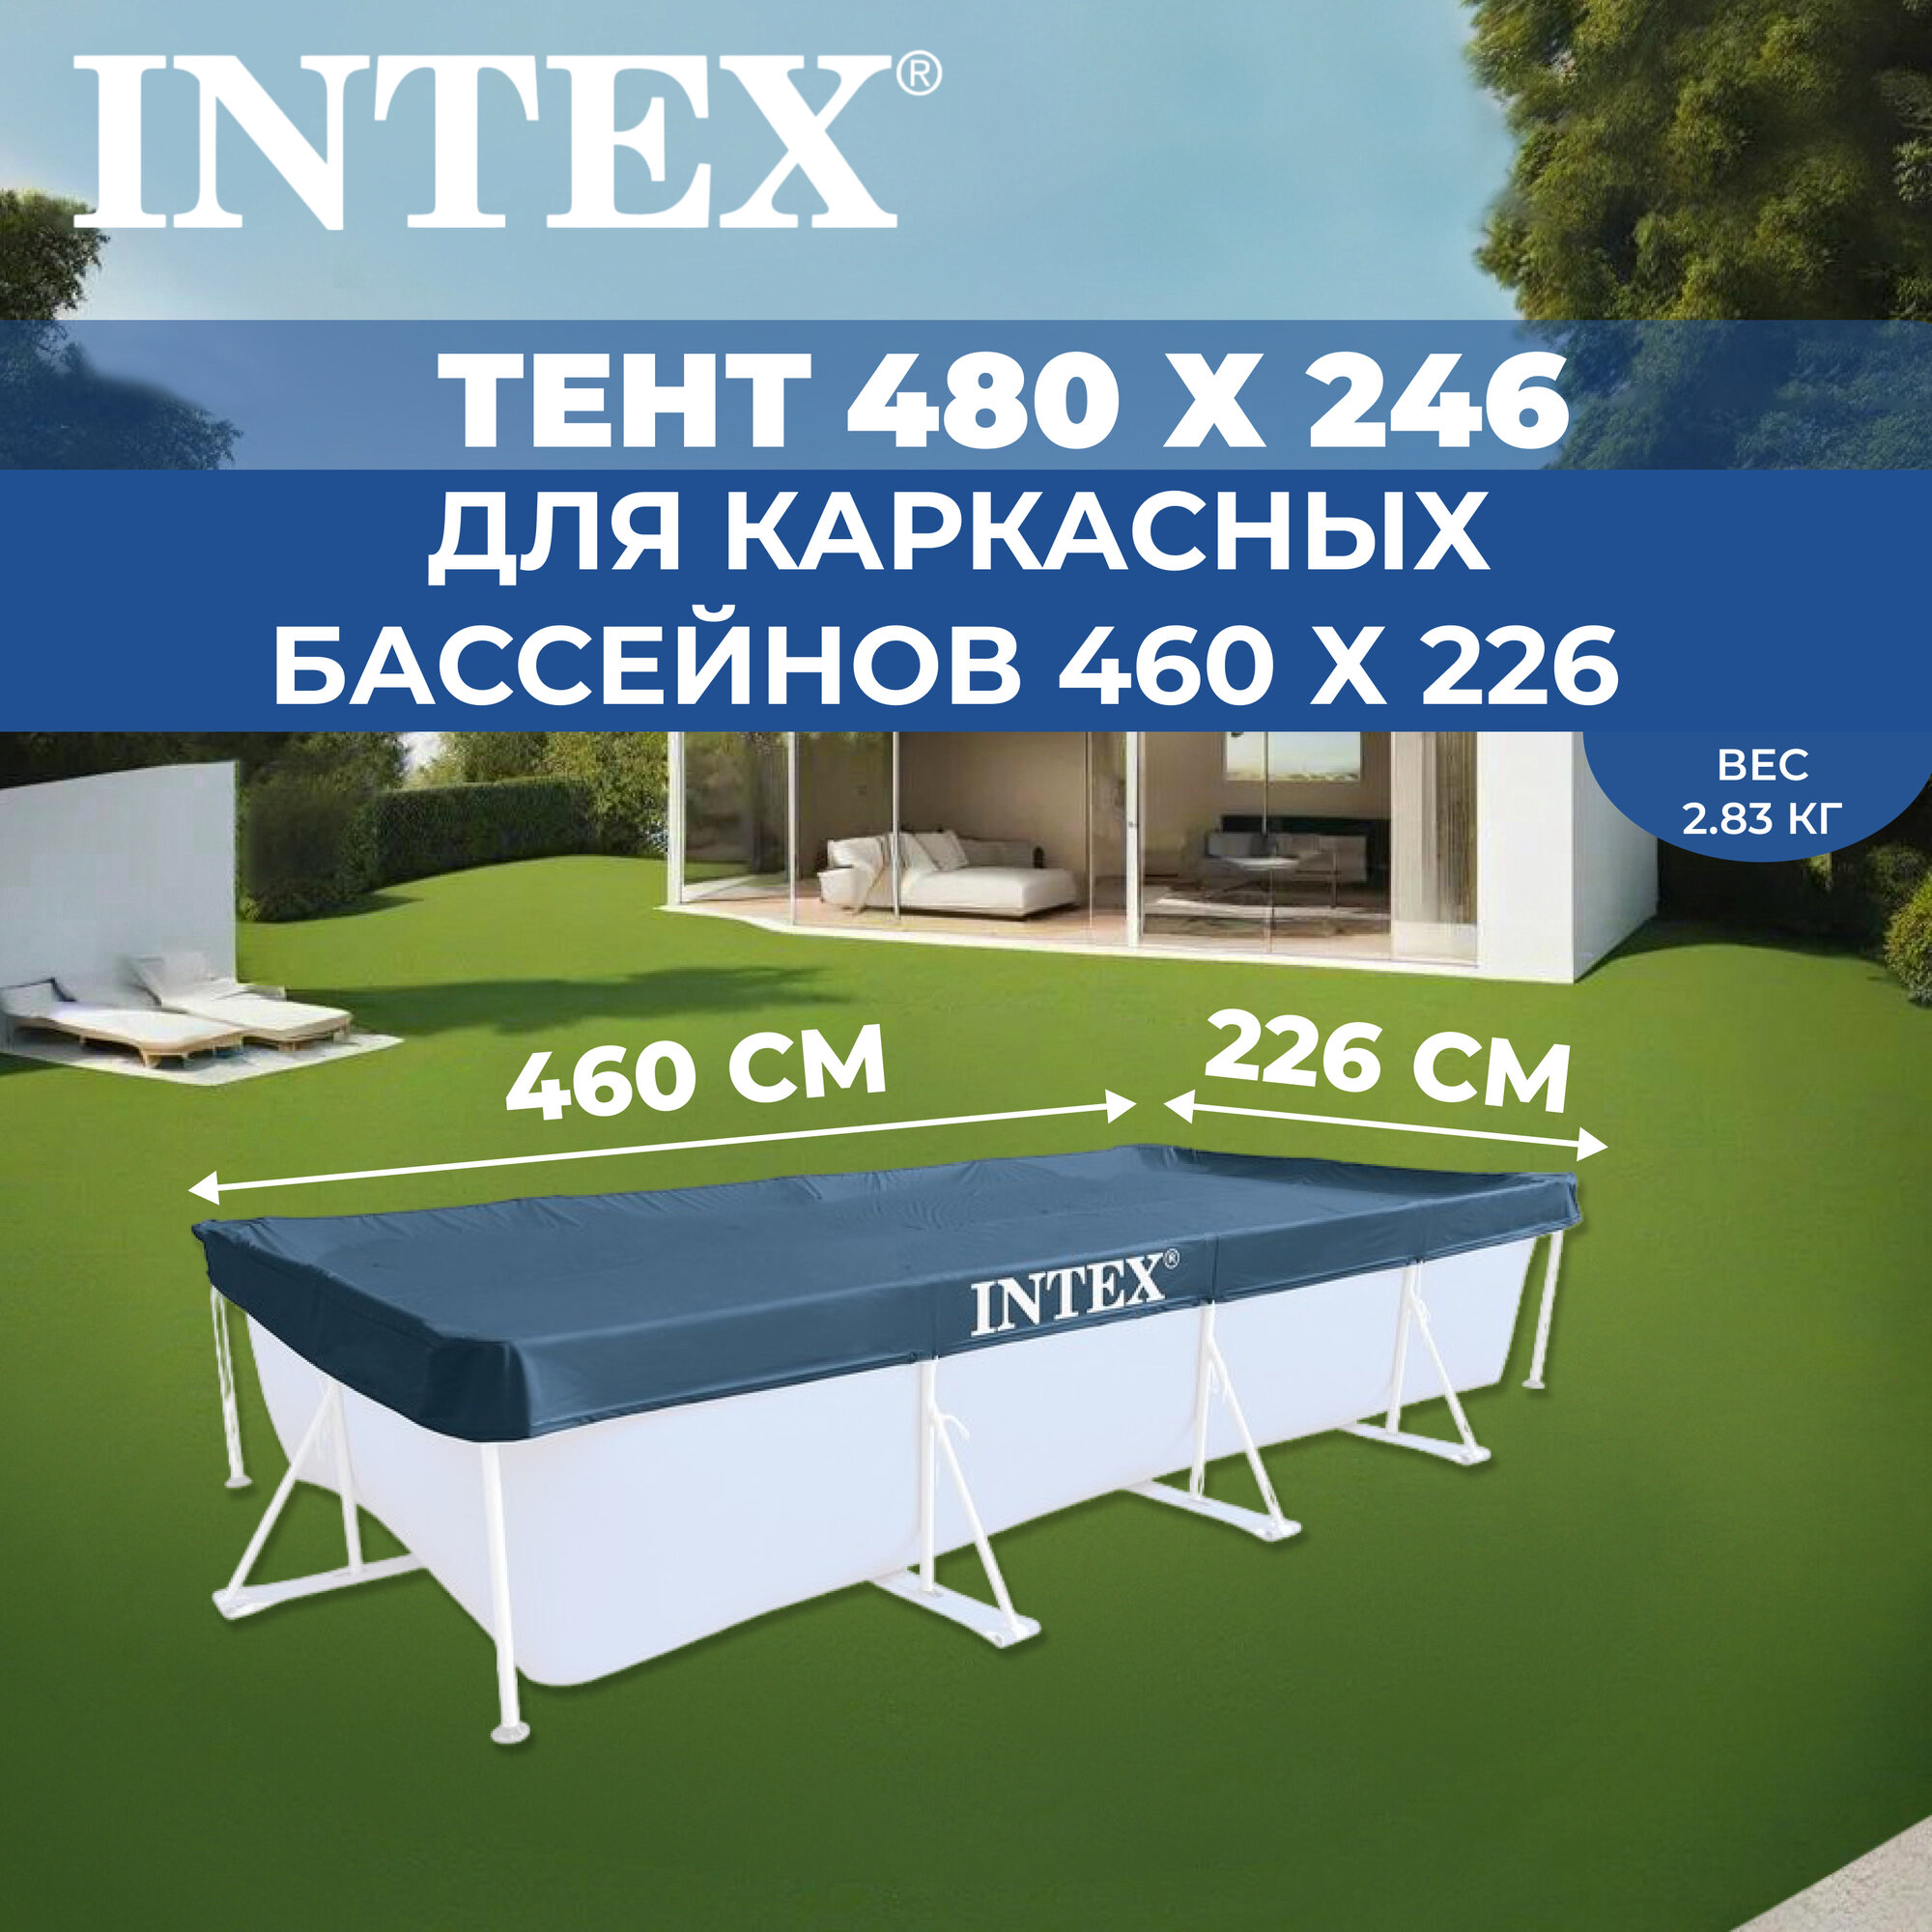 Тент INTEX на прямоугольный каркасный бассейн 460 х 226 см